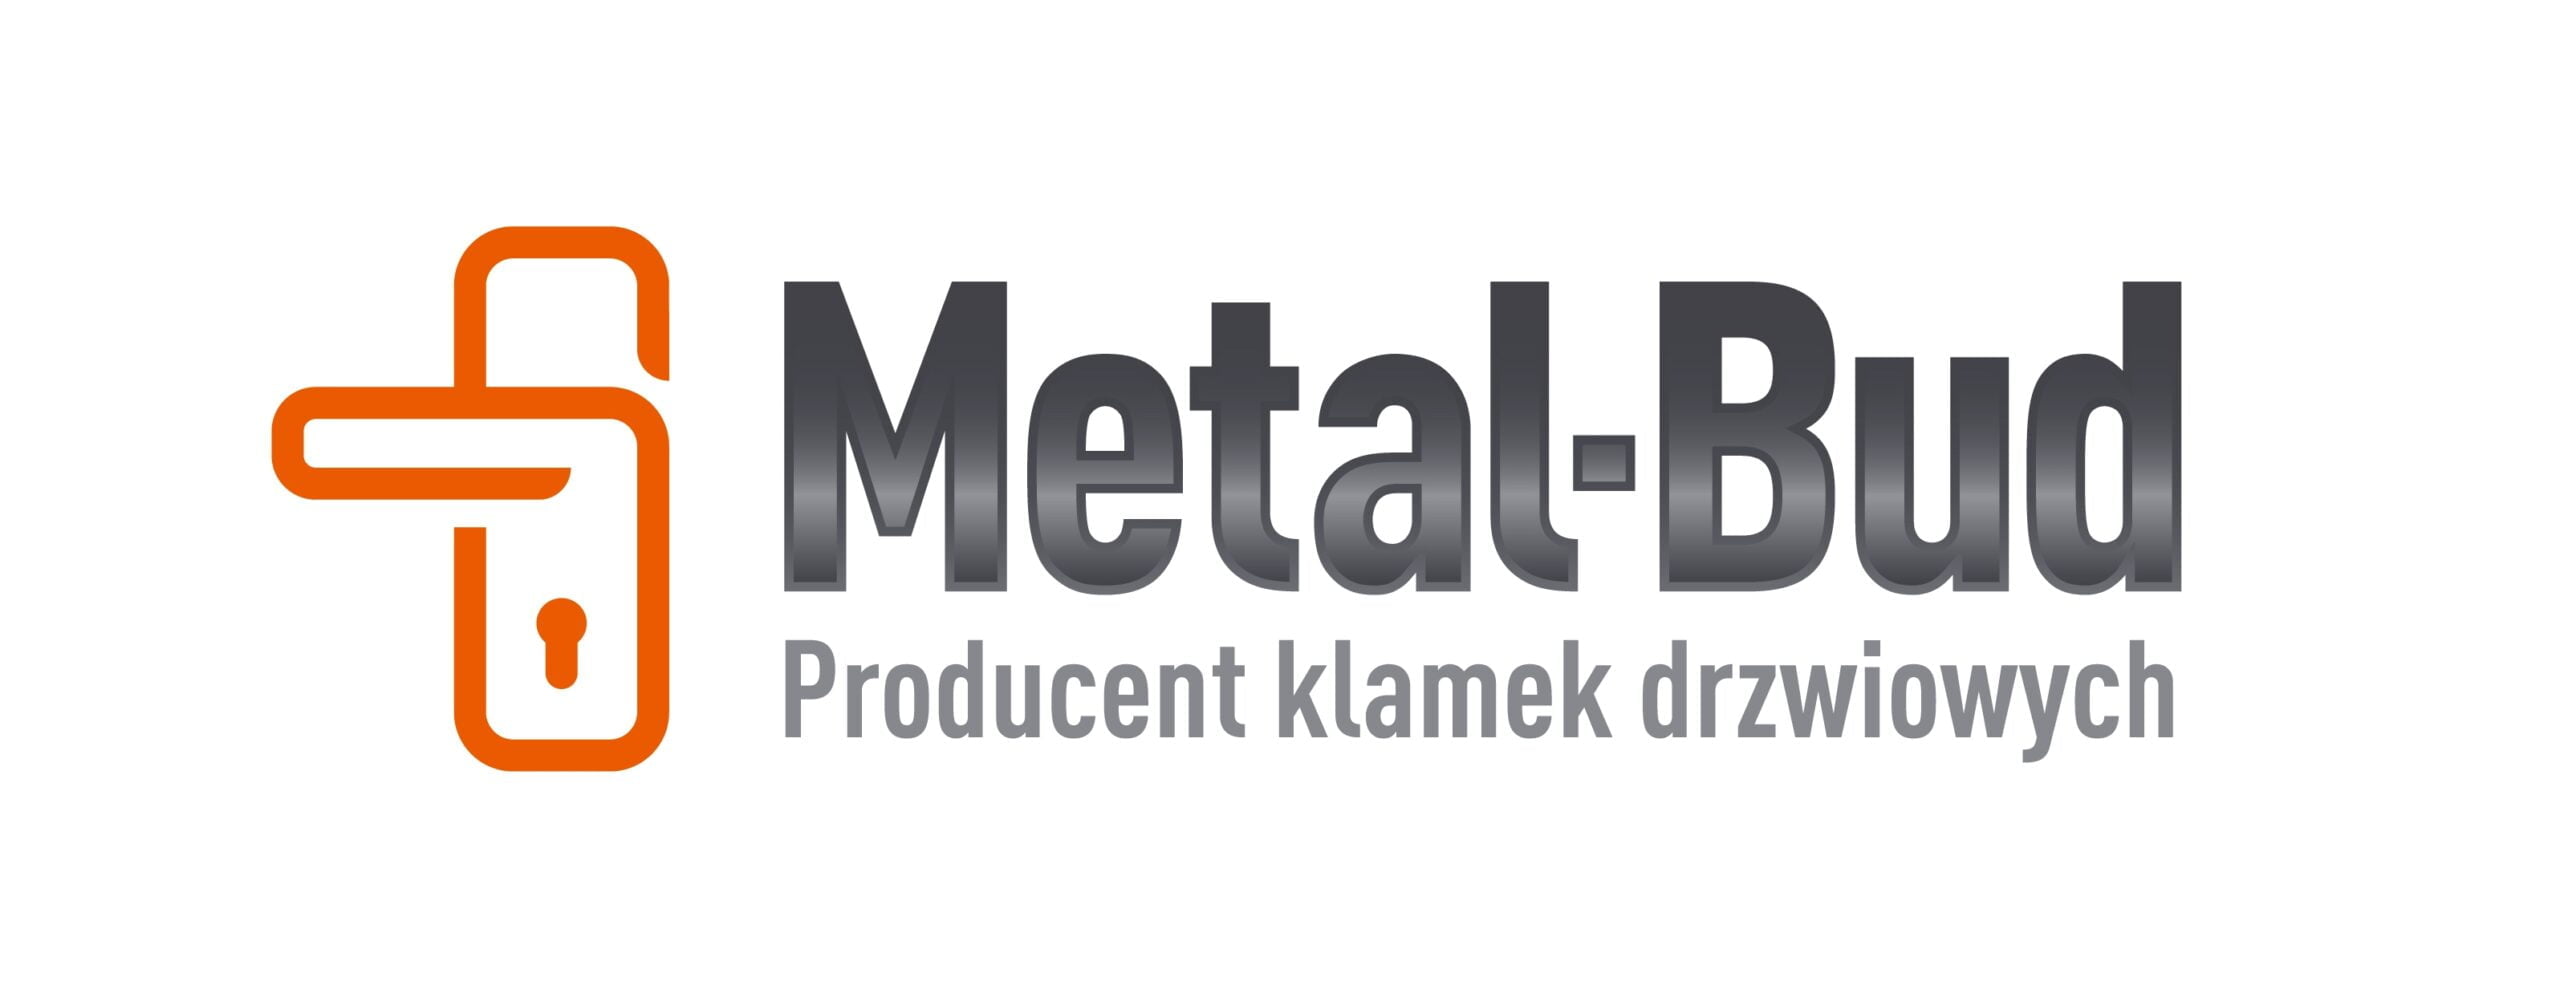 metalbud-logo | FAKTORSKLEP.PL